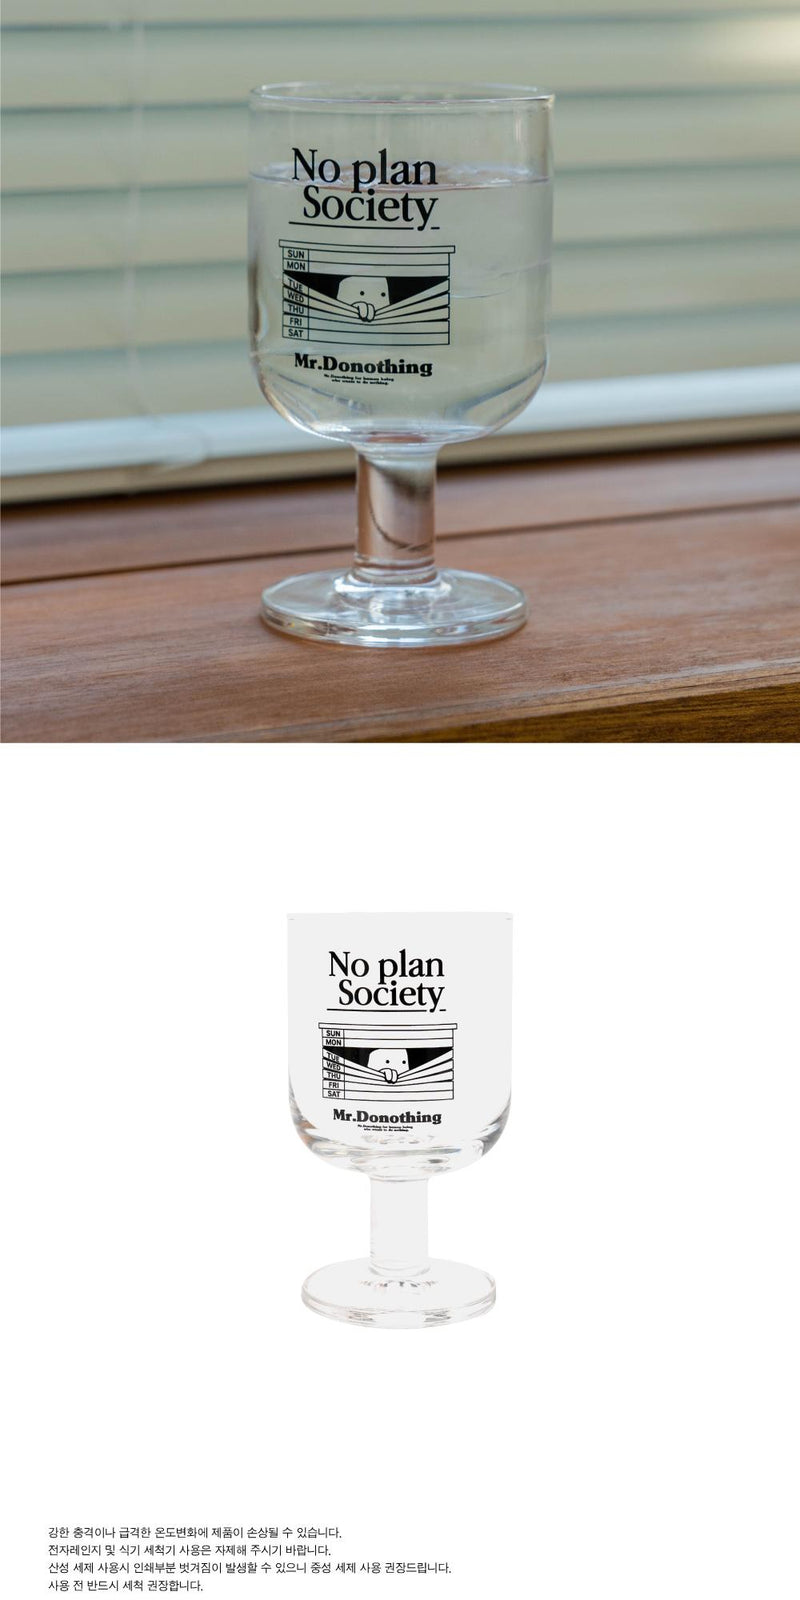 Goblet - No Plan Society